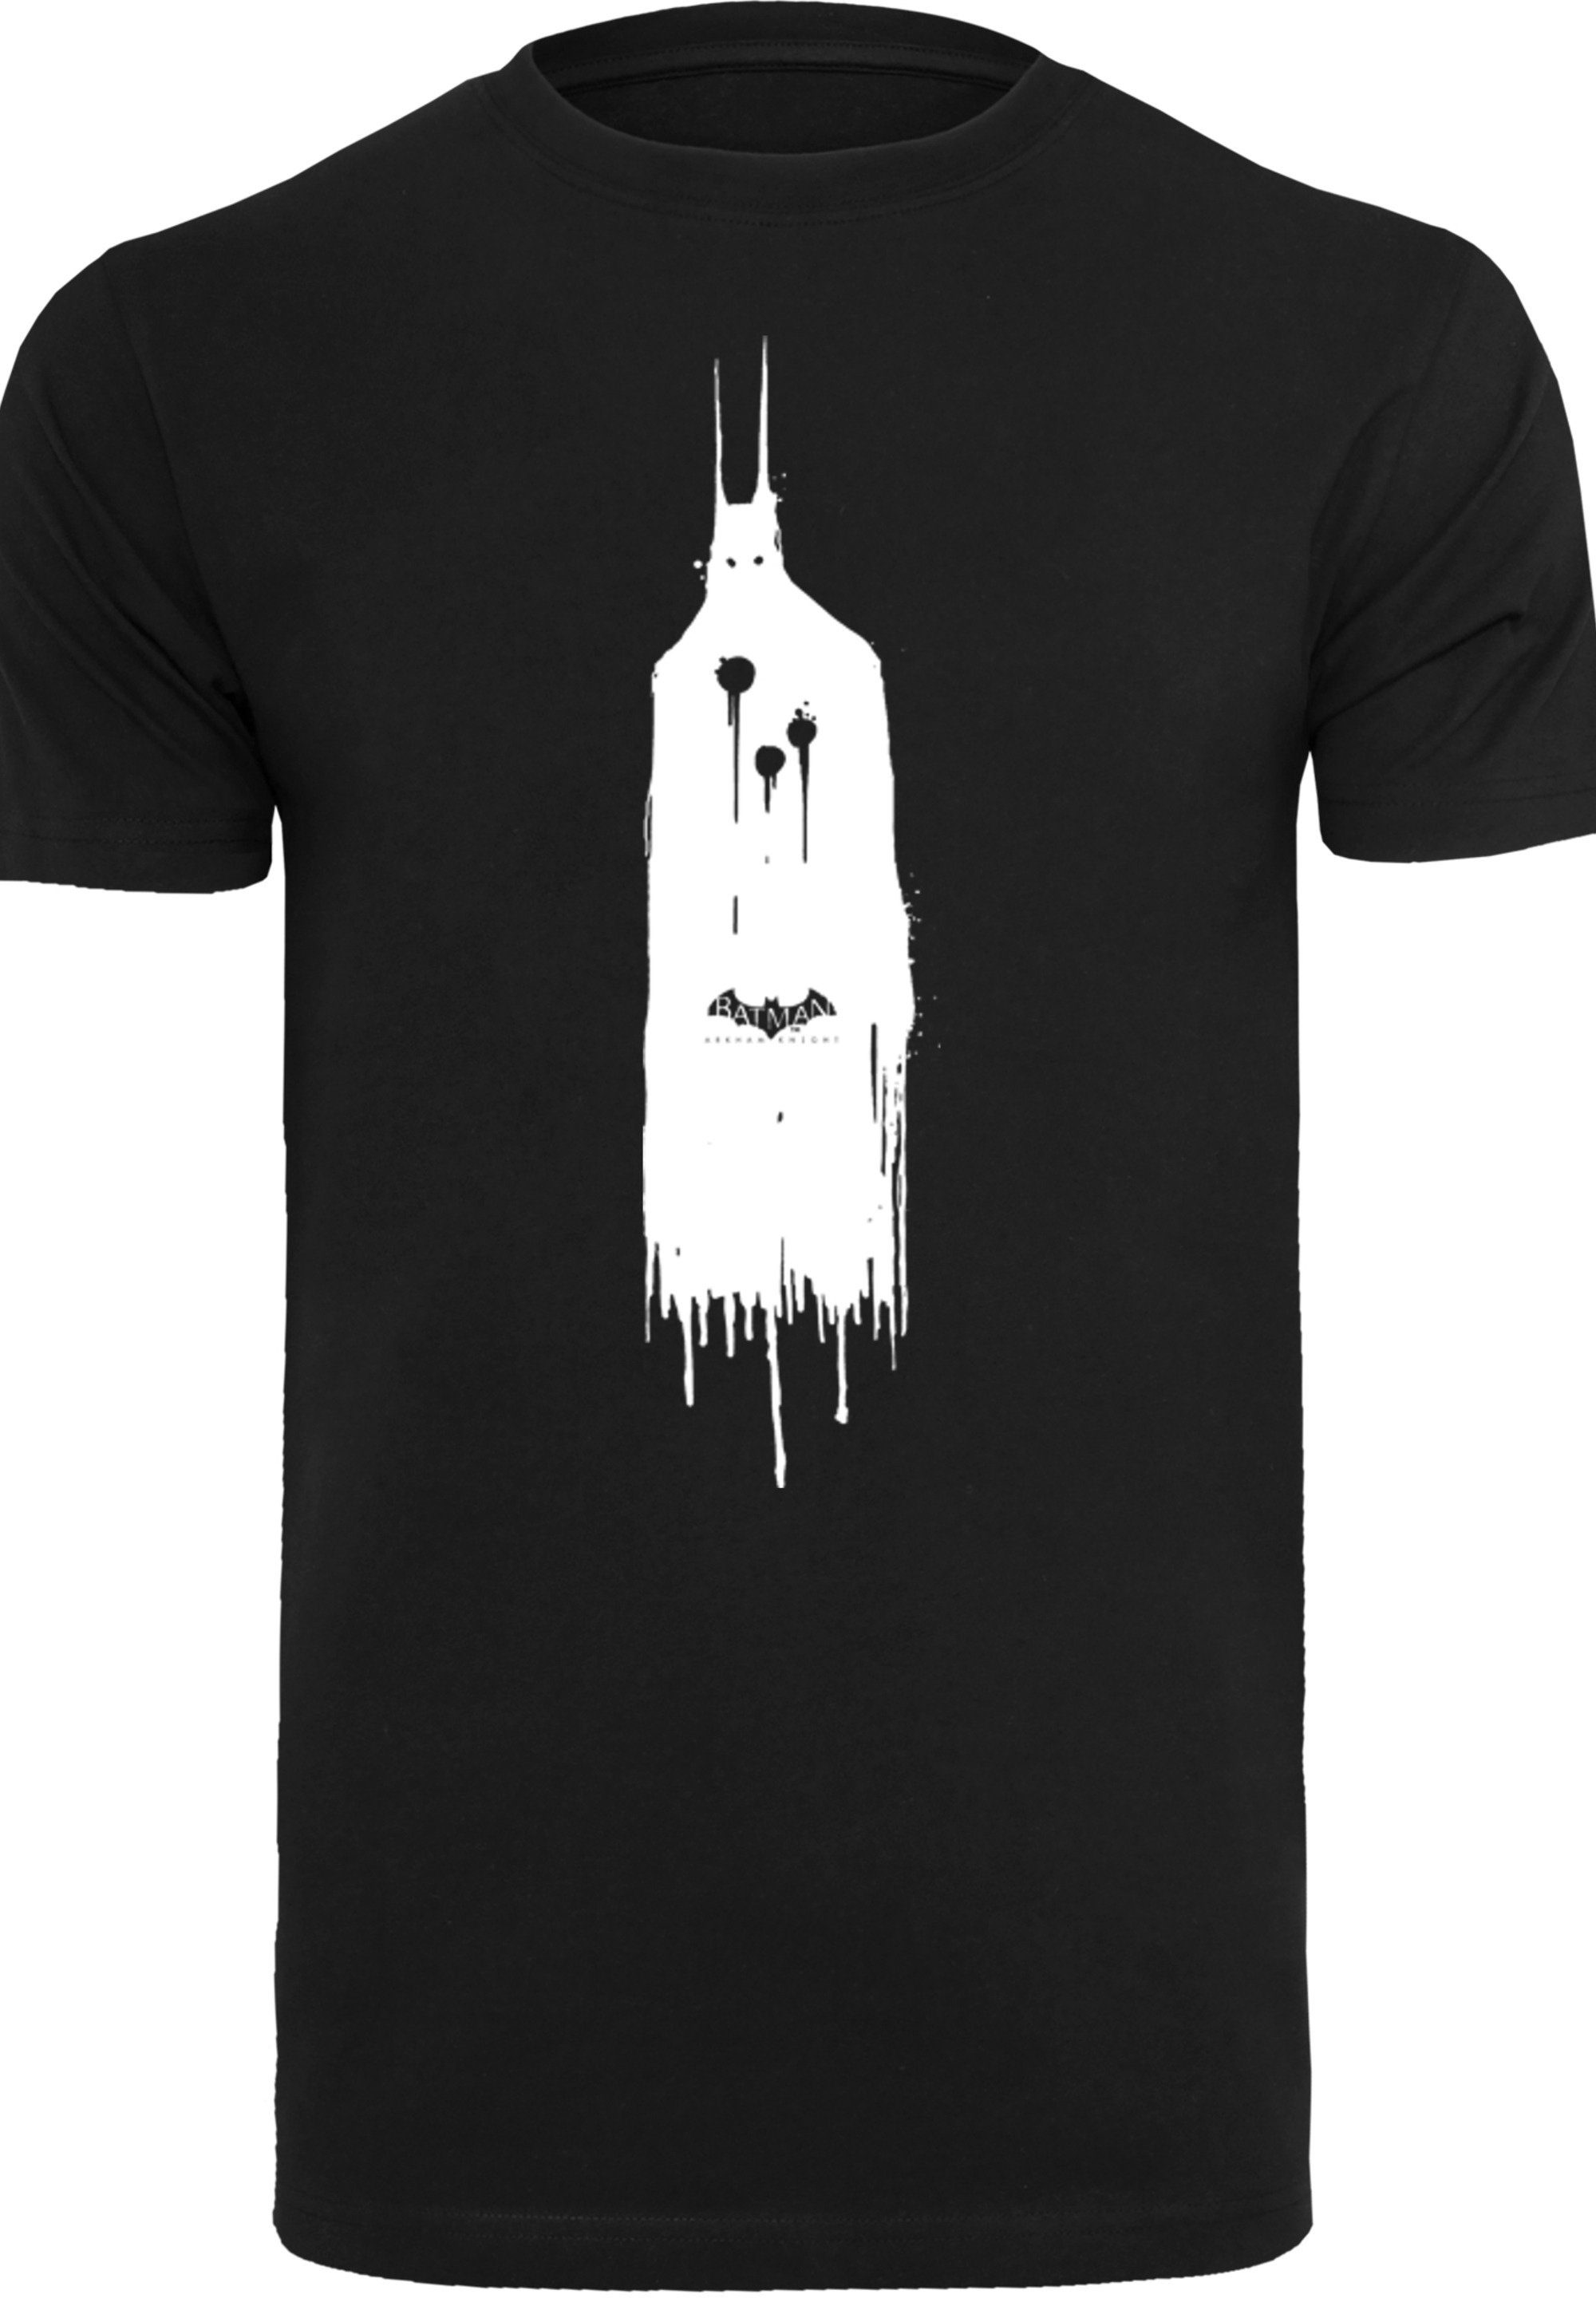 T-Shirt Batman Print Arkham Knight Comics F4NT4STIC Ghost DC